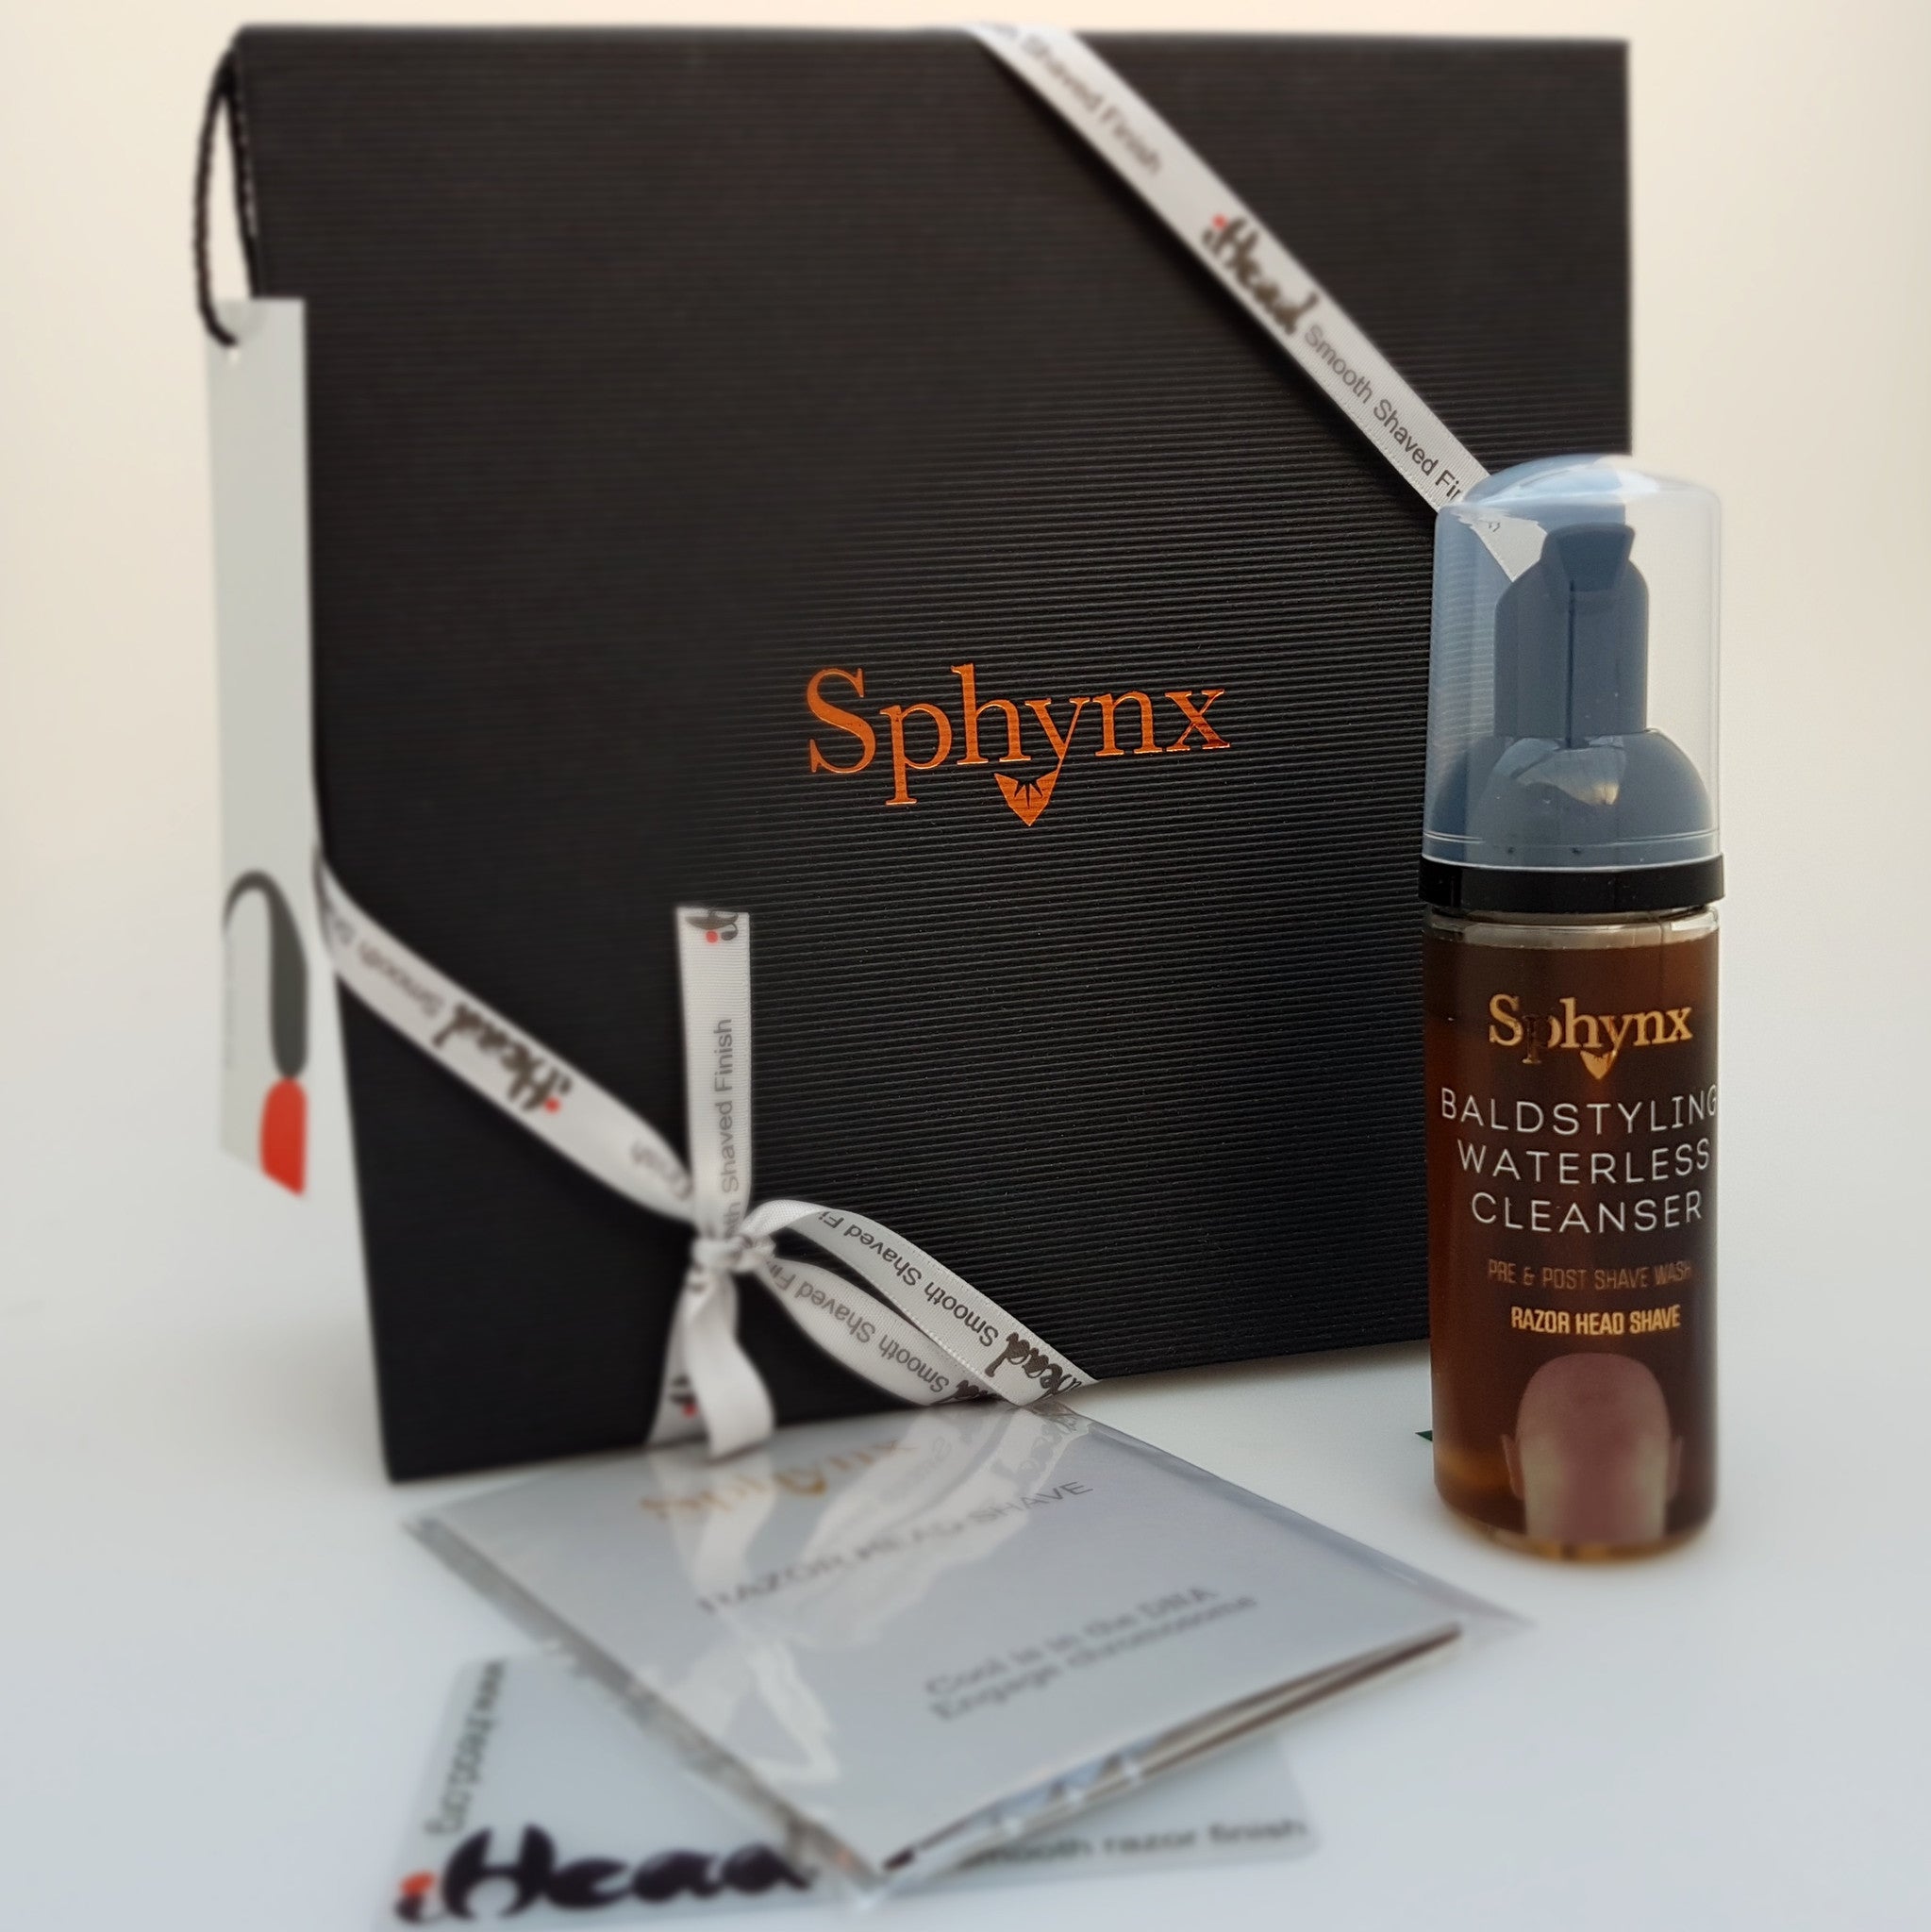 Sphynx - Baldstyling Waterless Cleanser - 50ml